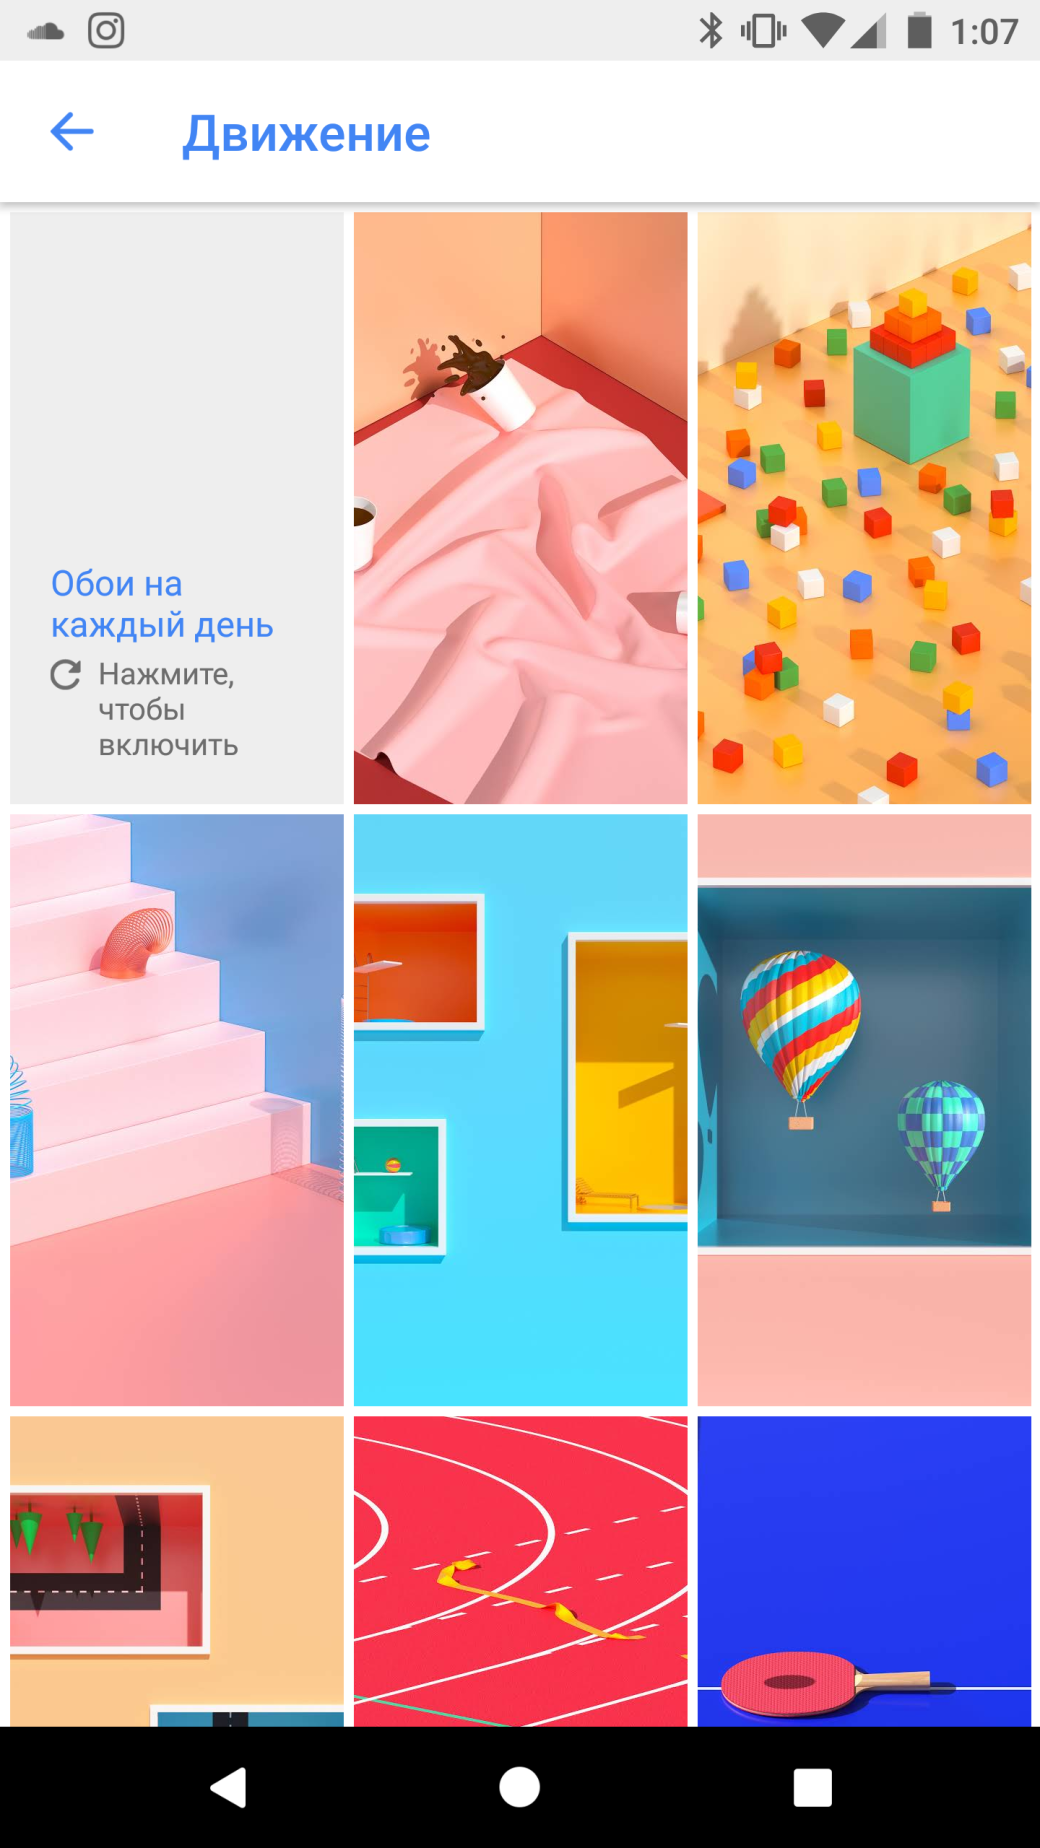 Галерея Официальное приложение «Обои» от Google получило 3 новых категории. Также появились обои с Pixel 2 - 4 фото